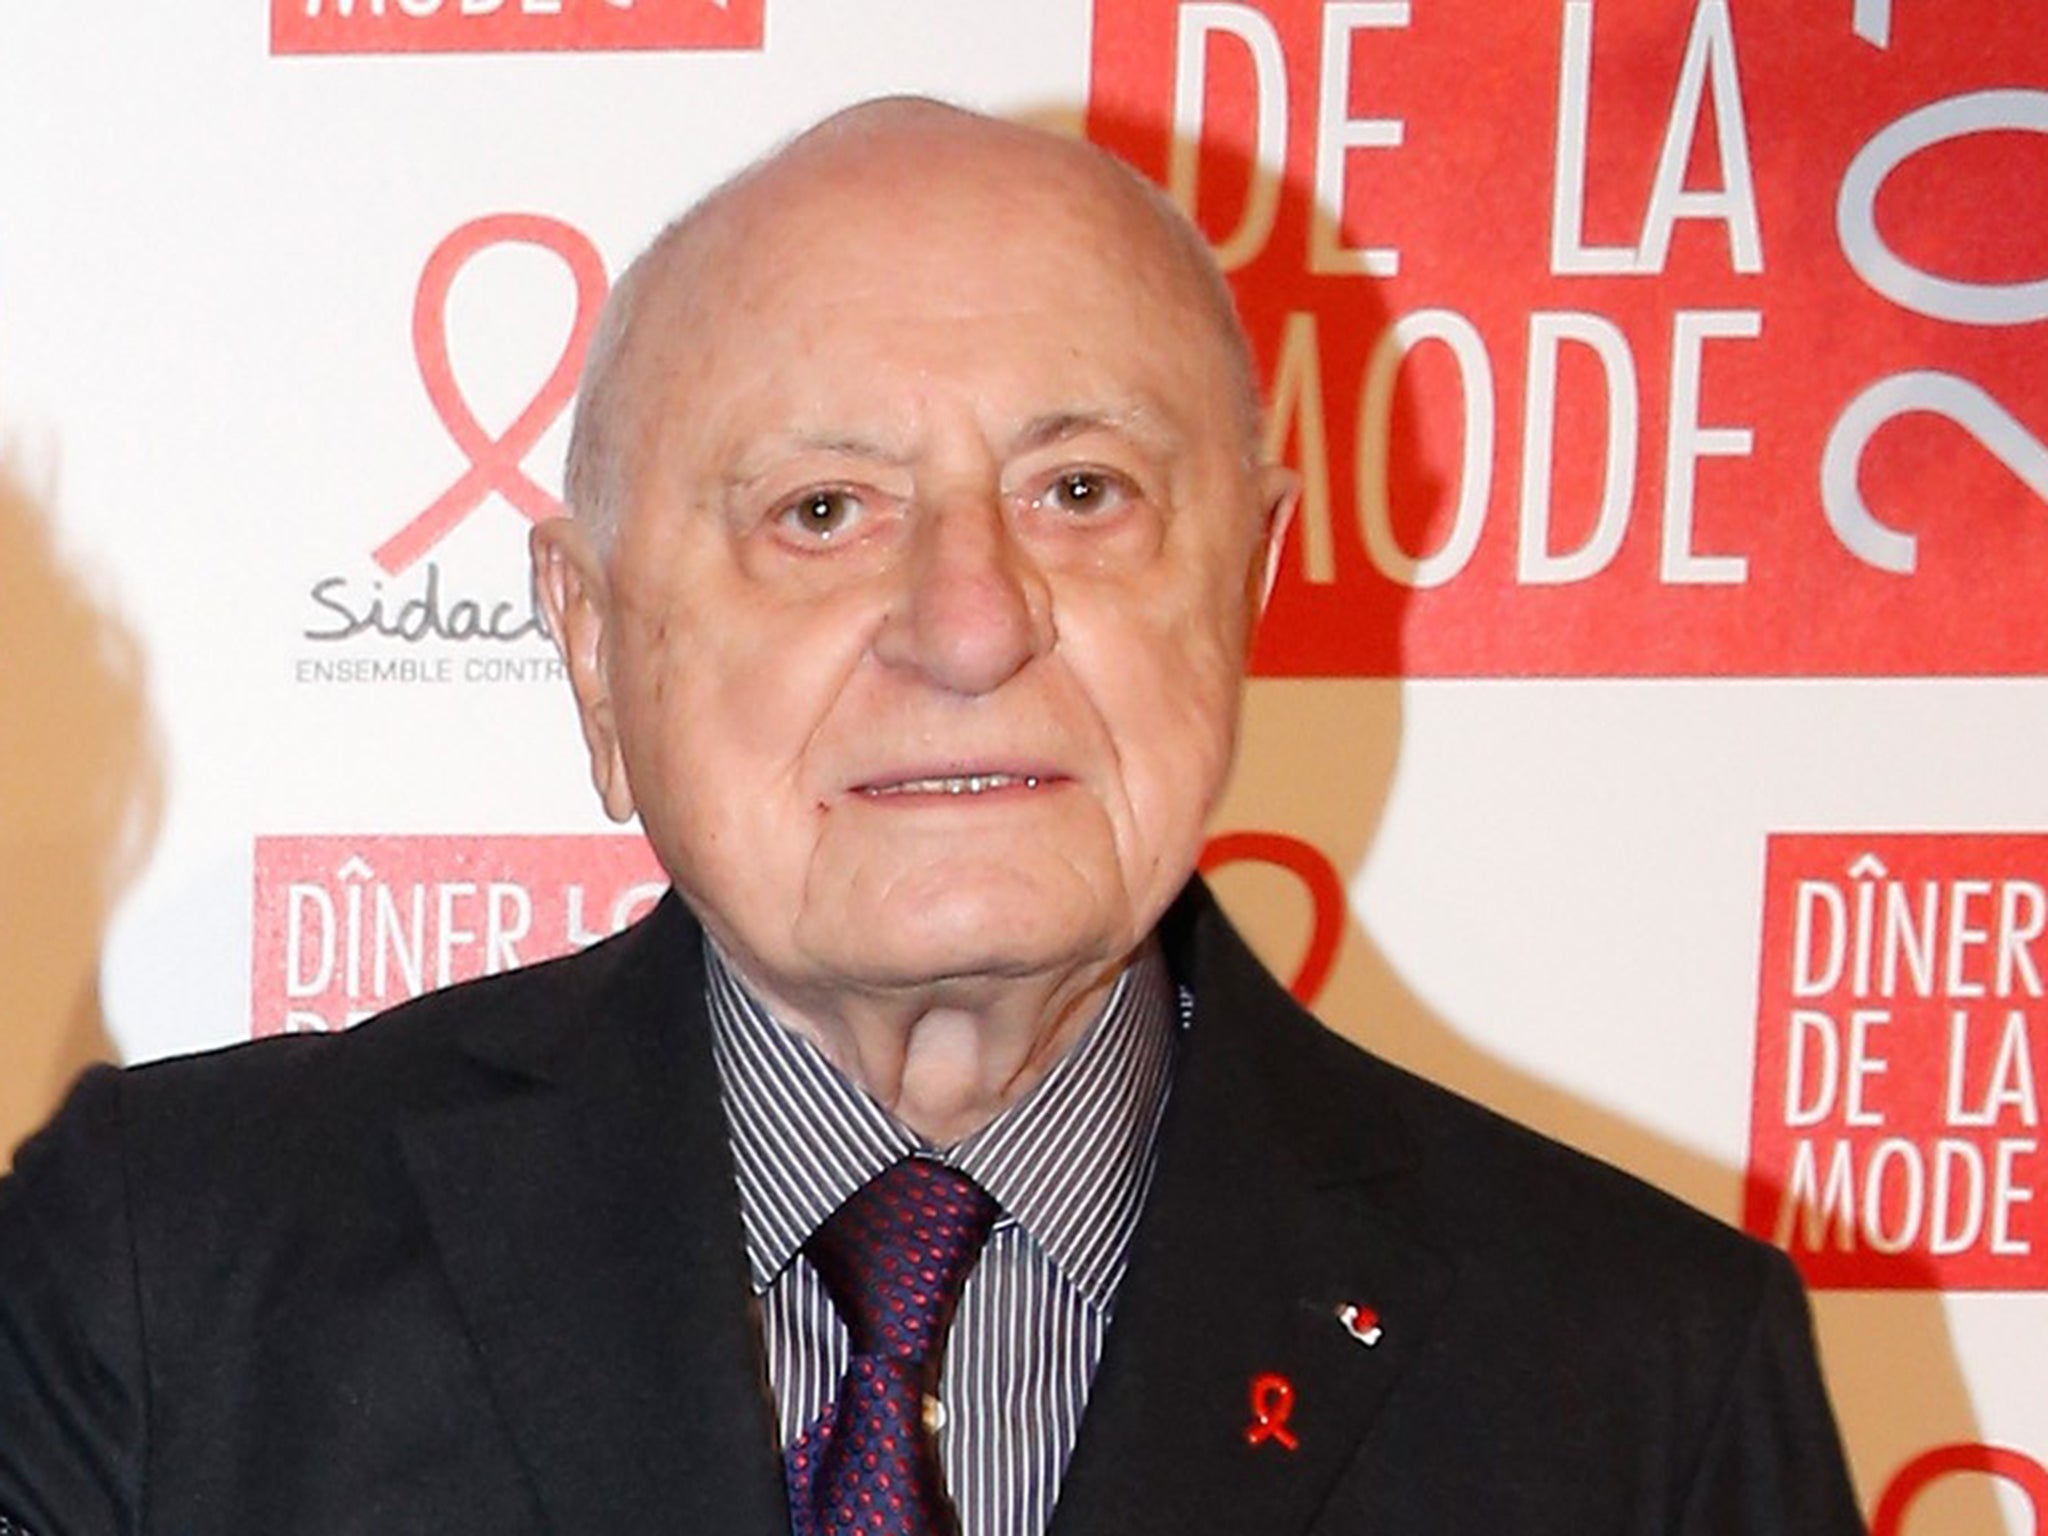 Millionaire businessman Pierre Bergé became part-owner of Le Monde in 2010